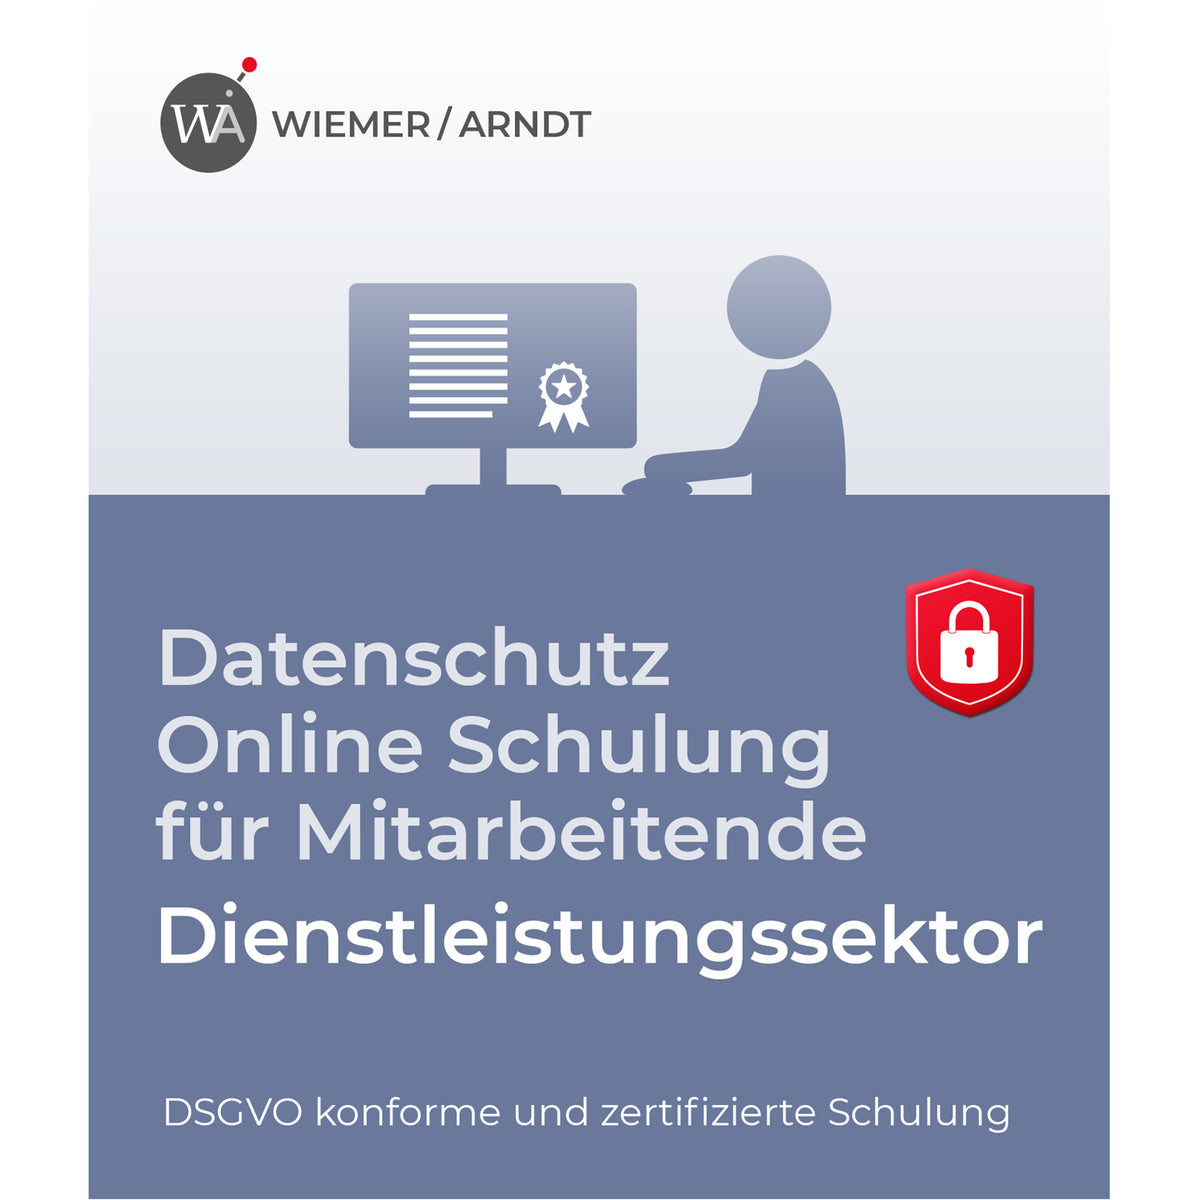 Datenschutz Online Schulung für Mitarbeiter im Dienstleistungssektor